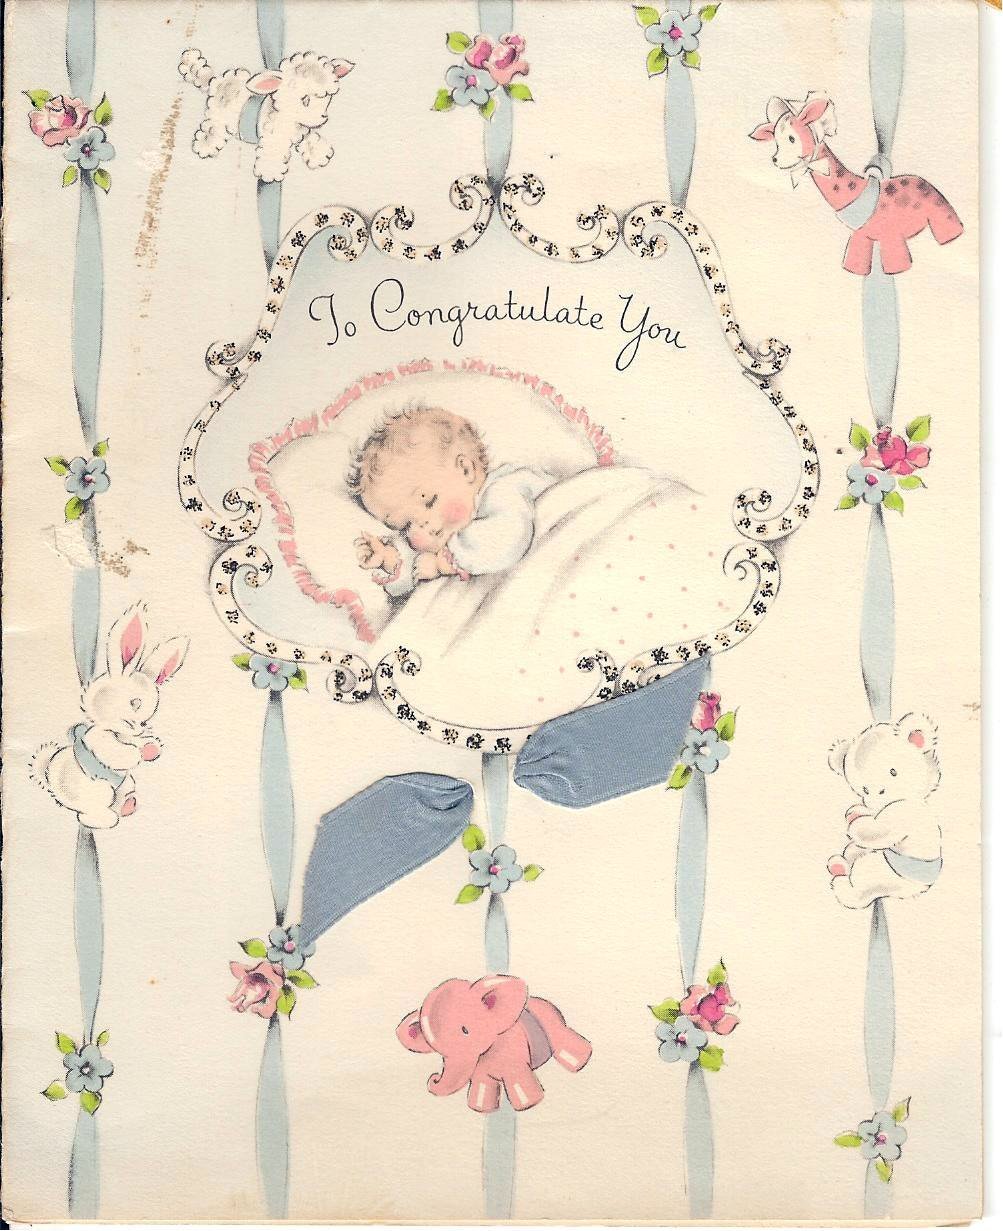 Красивые открытки с новорожденным